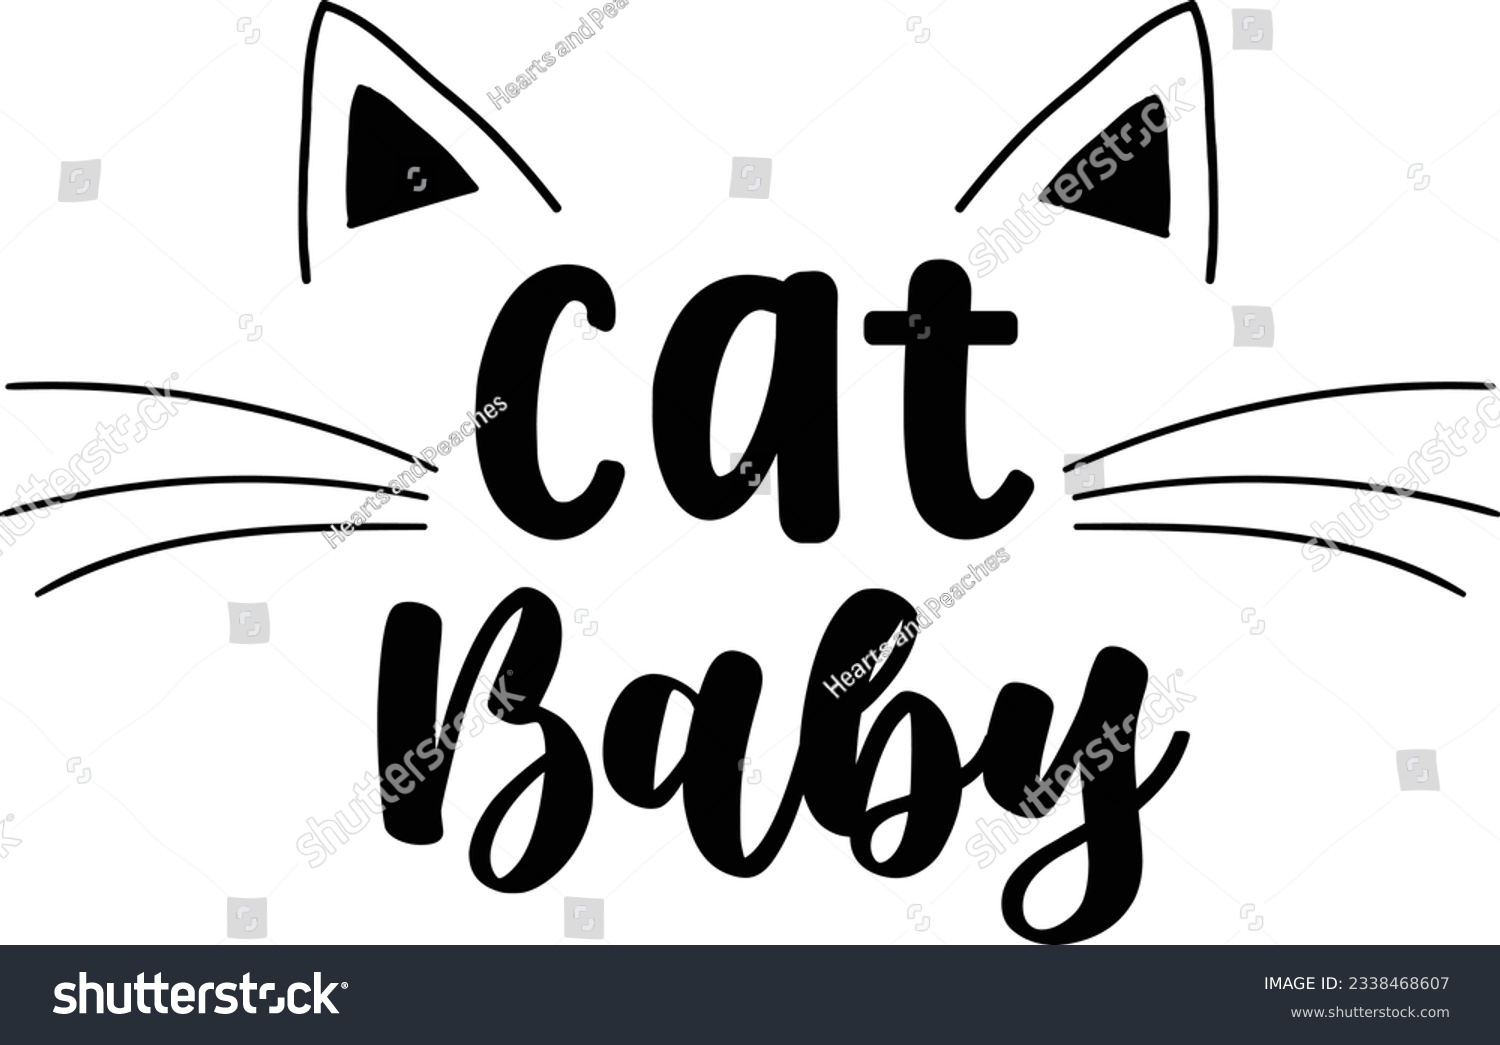 SVG of Cat baby, Cat SVG Design, SVG File, SVG Cut File, T-shirt design, Tshirt design svg